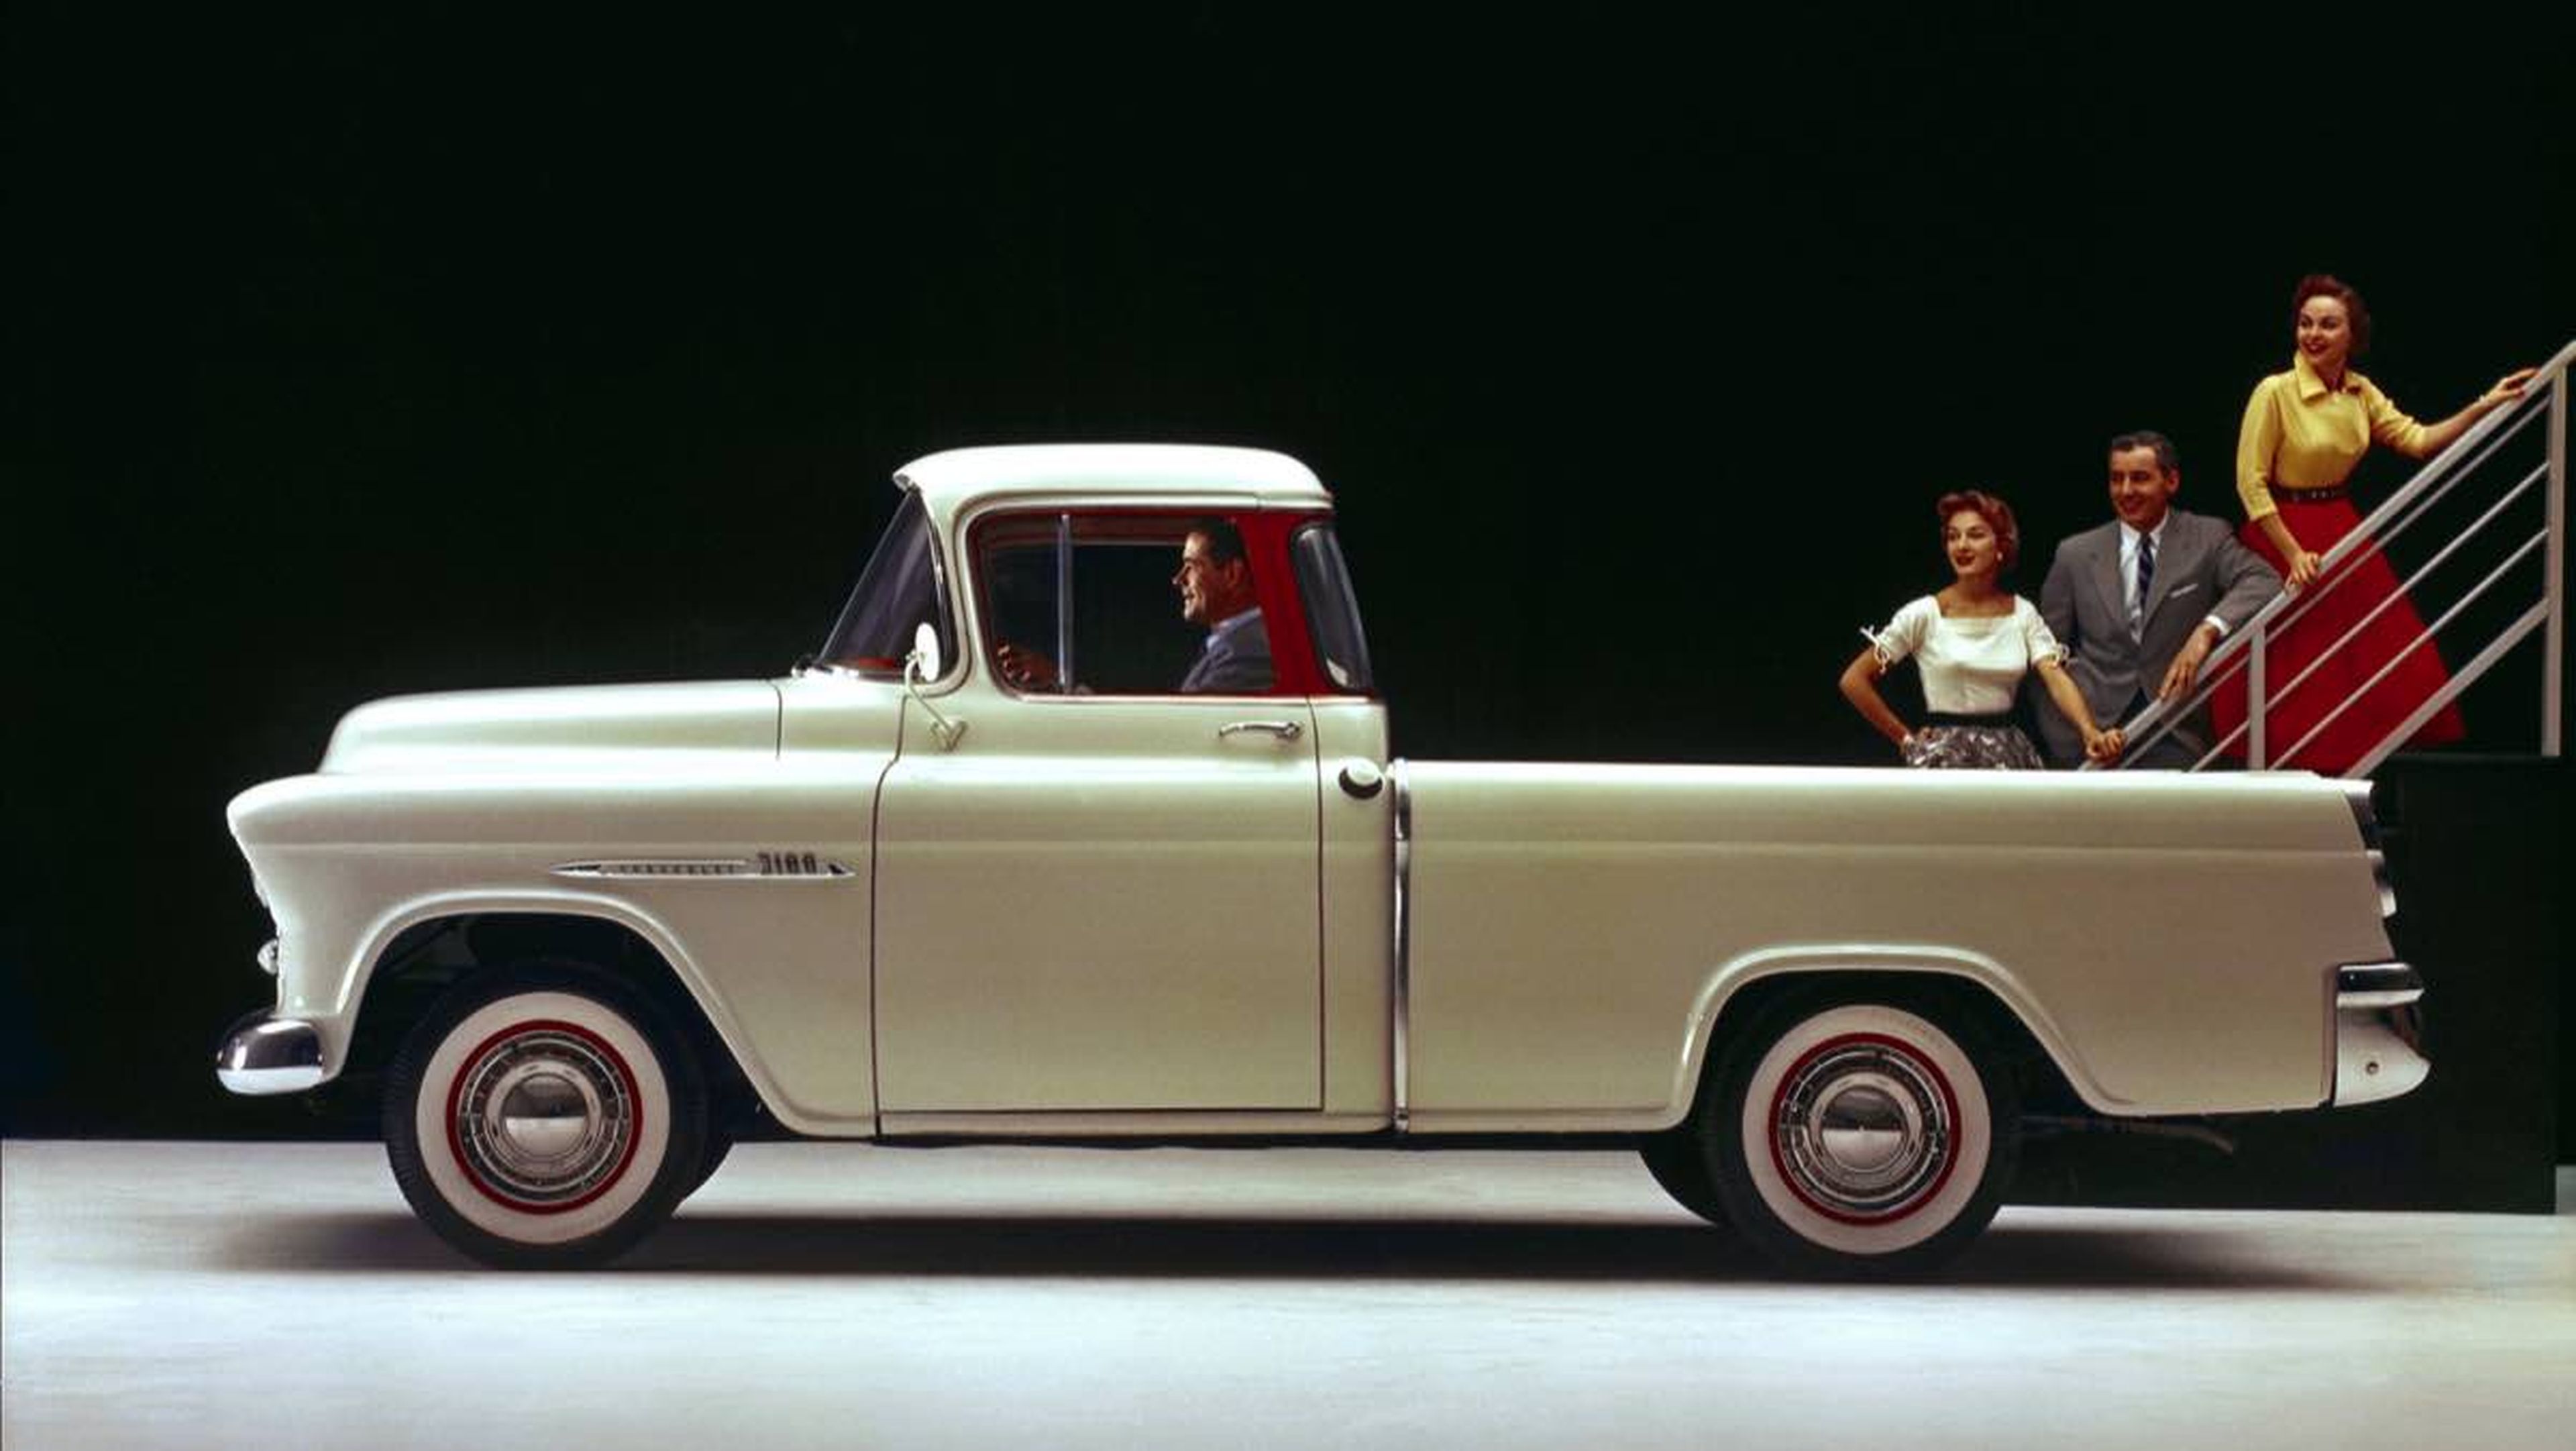 1955 - Chevrolet 'Small Block' V8